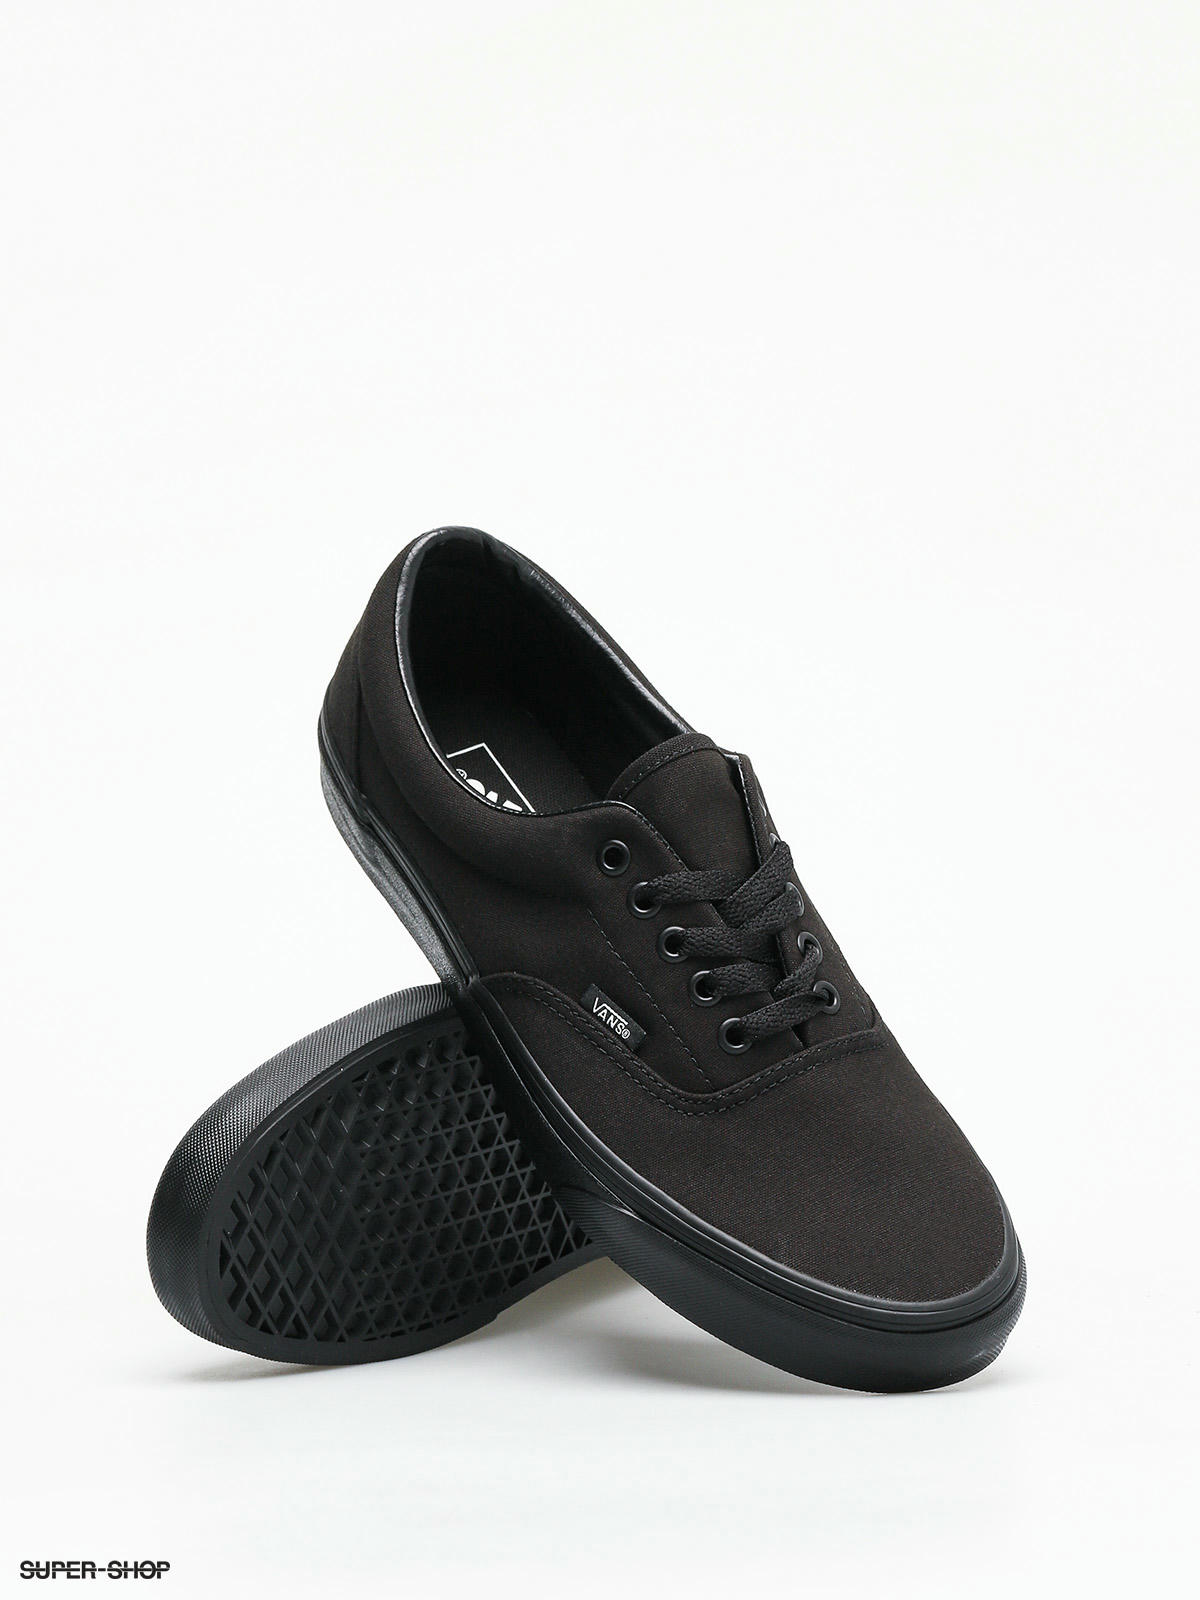 vans shoes black on black